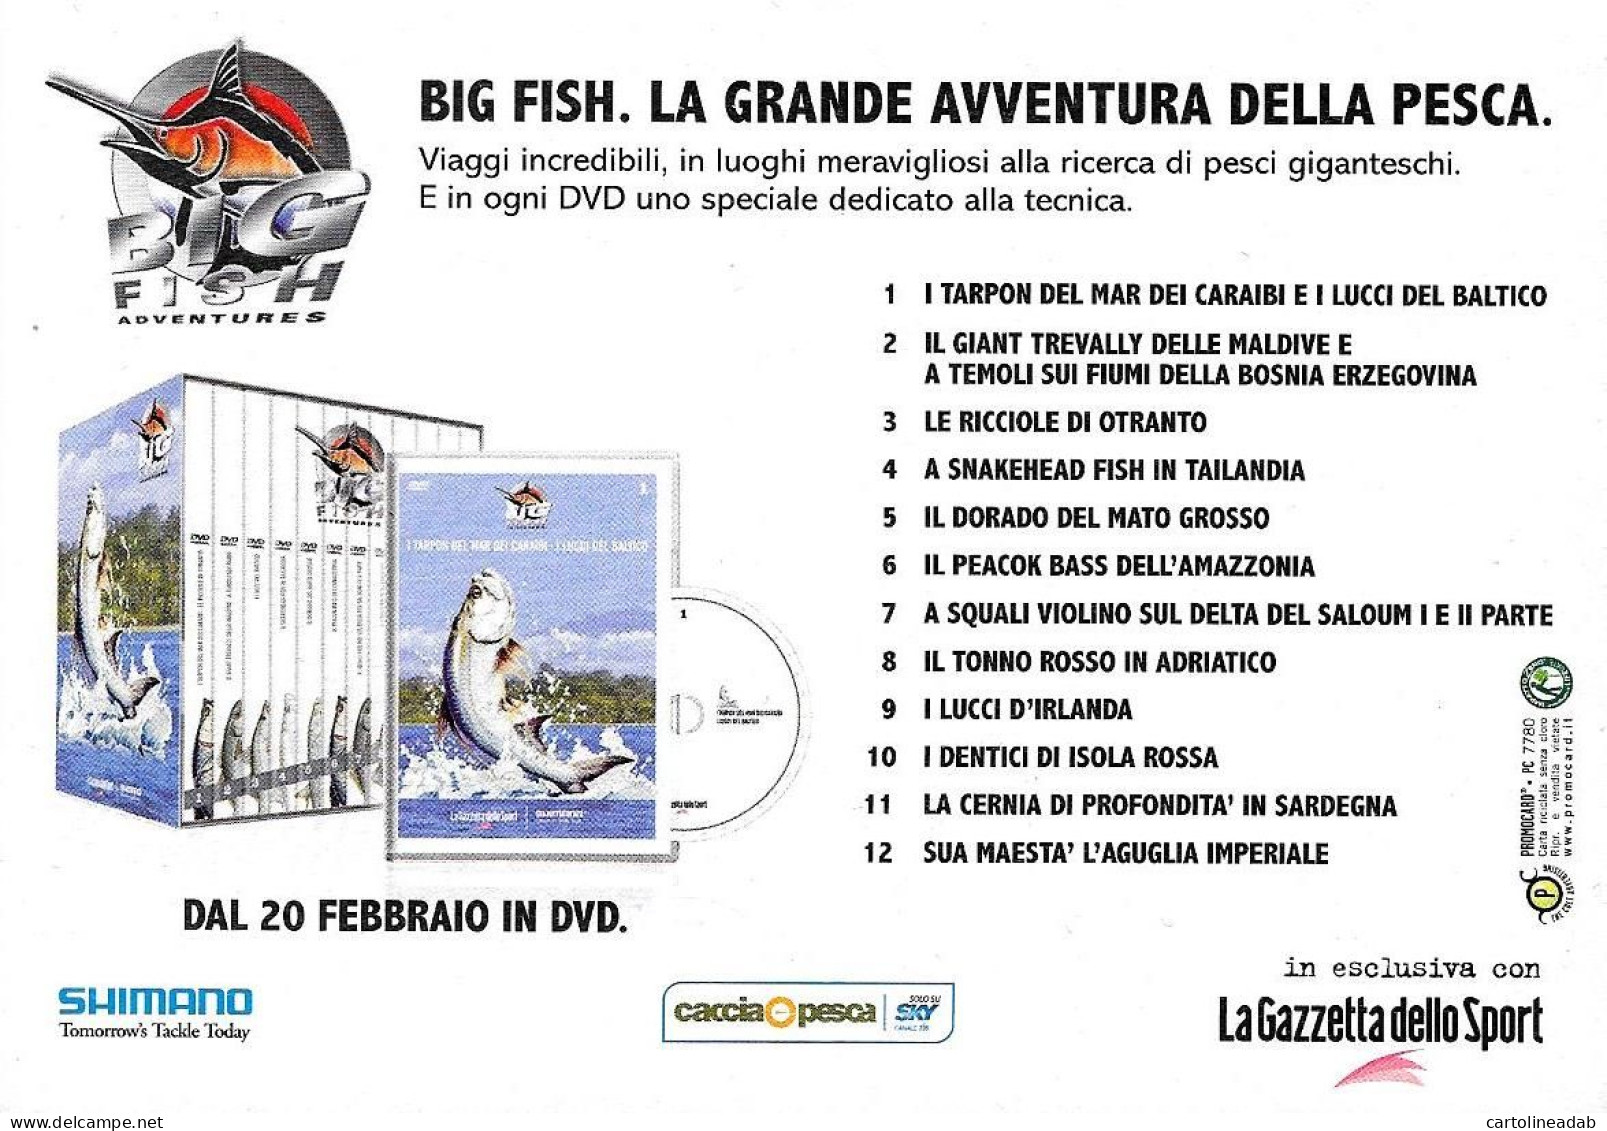 [MD9447] CPM - BIG FISH LA GRANDE AVVENTURA DELLA PESCA DVD - PROMOCARD 7780 - PERFETTA - Non Viaggiata - Publicité